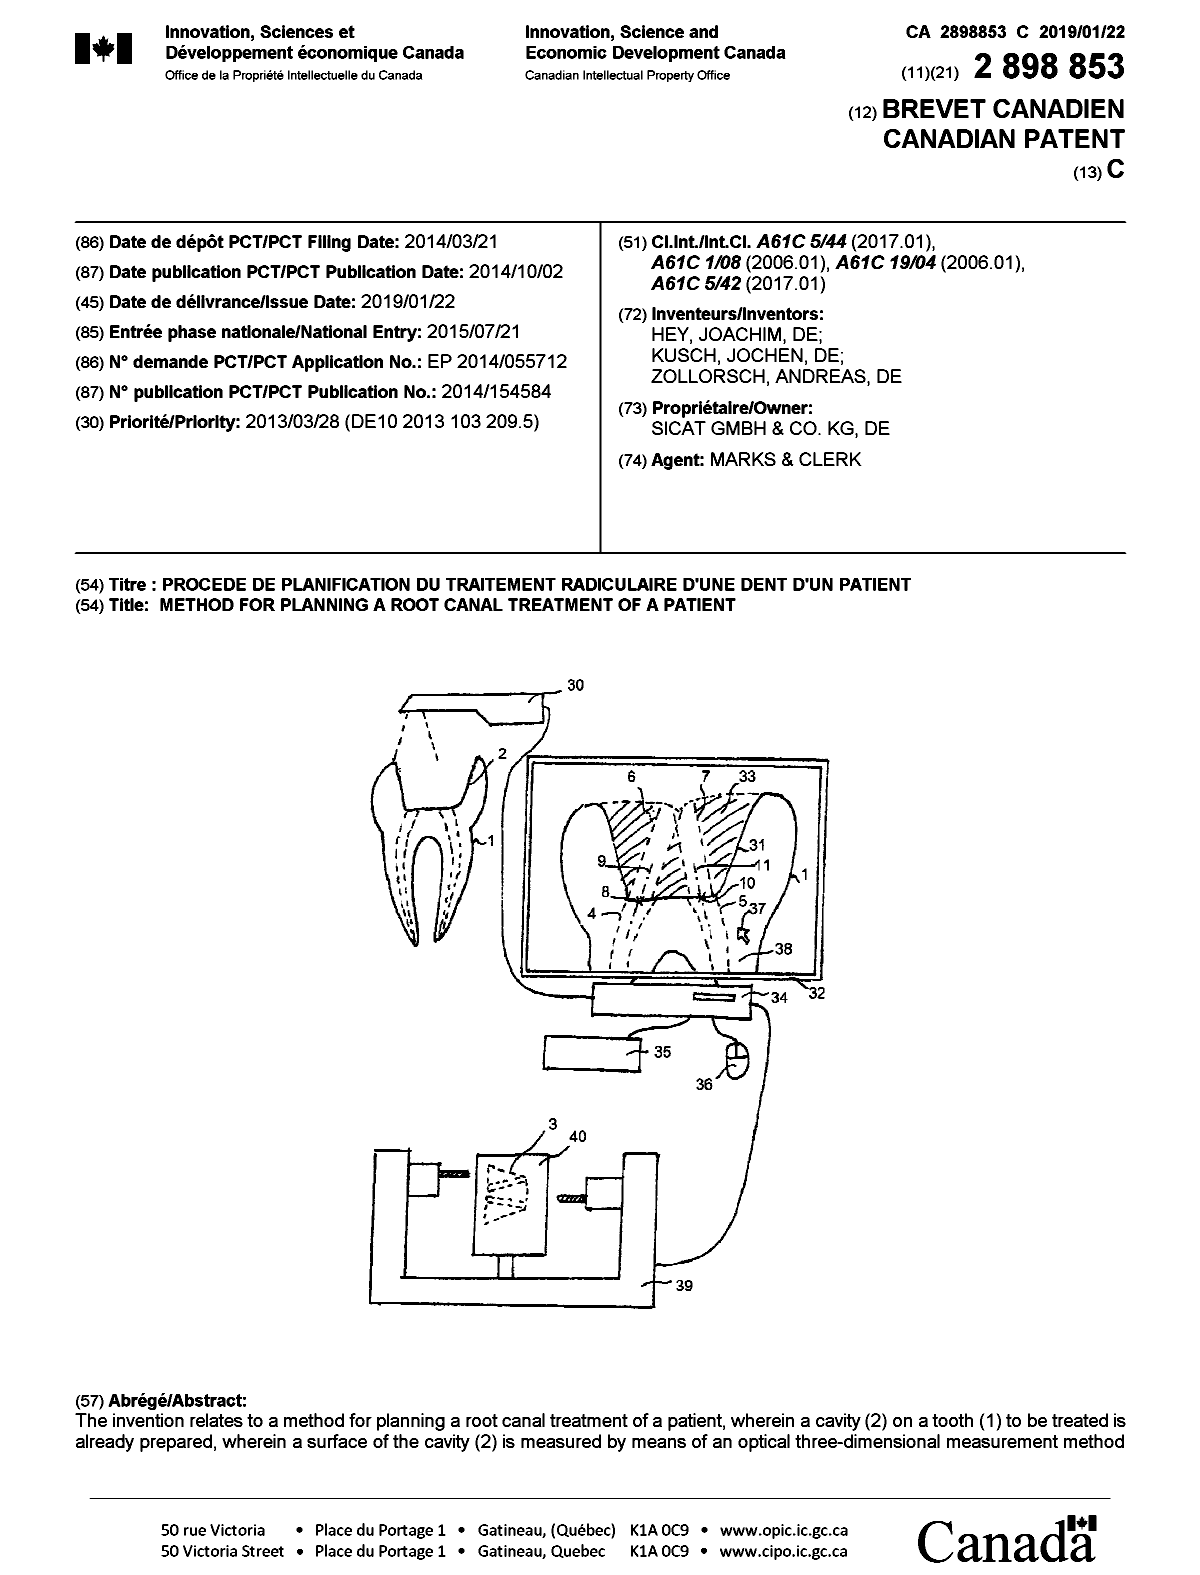 Document de brevet canadien 2898853. Page couverture 20190103. Image 1 de 2